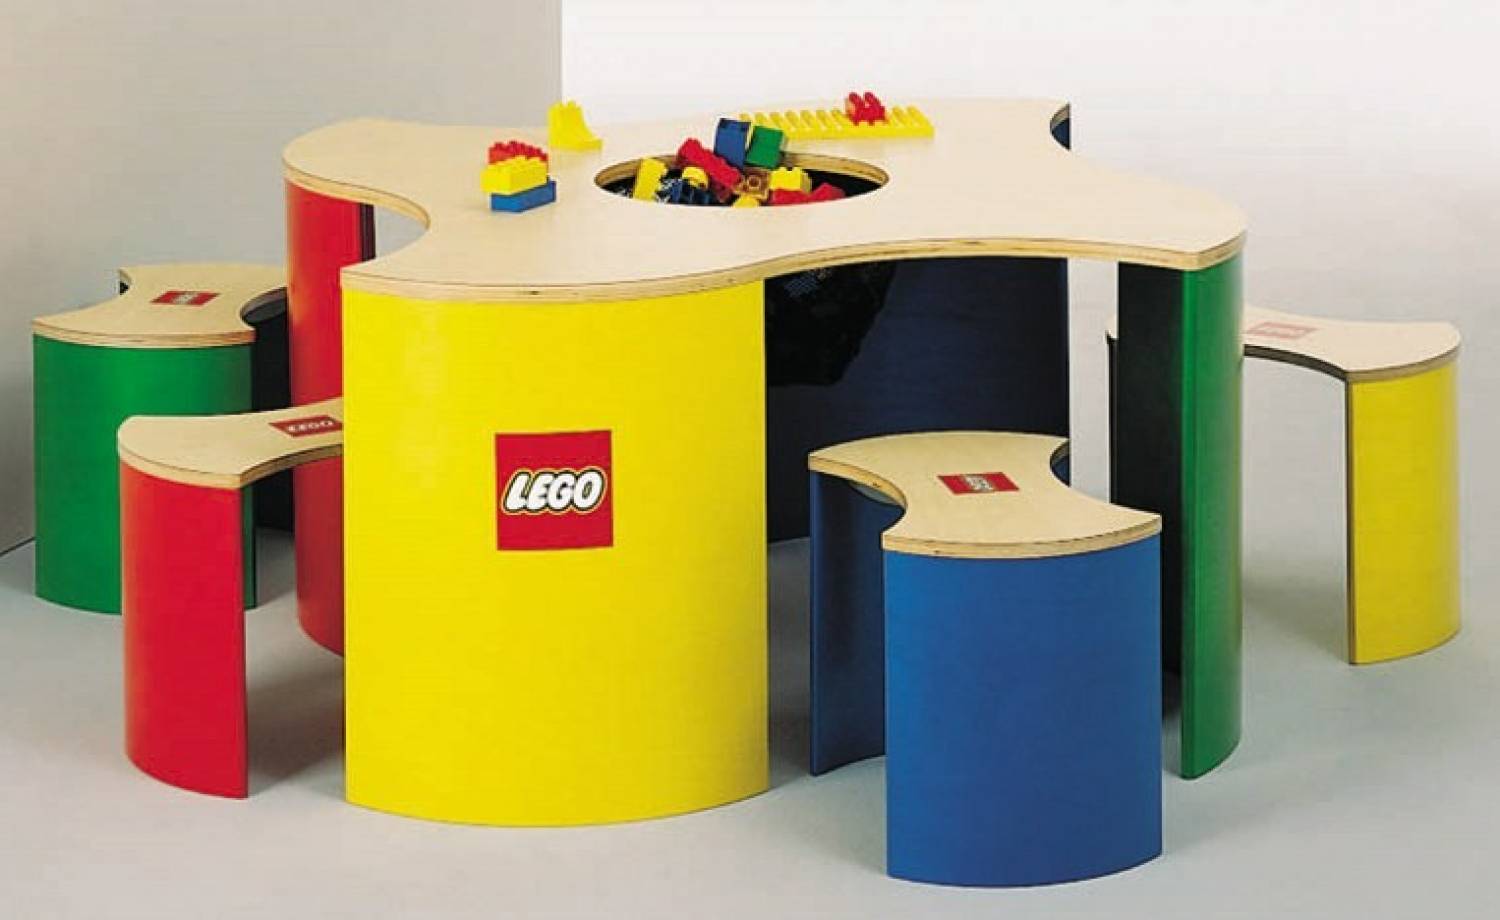 Table pour briques lego et duplo - Jeu d'Enfant ®